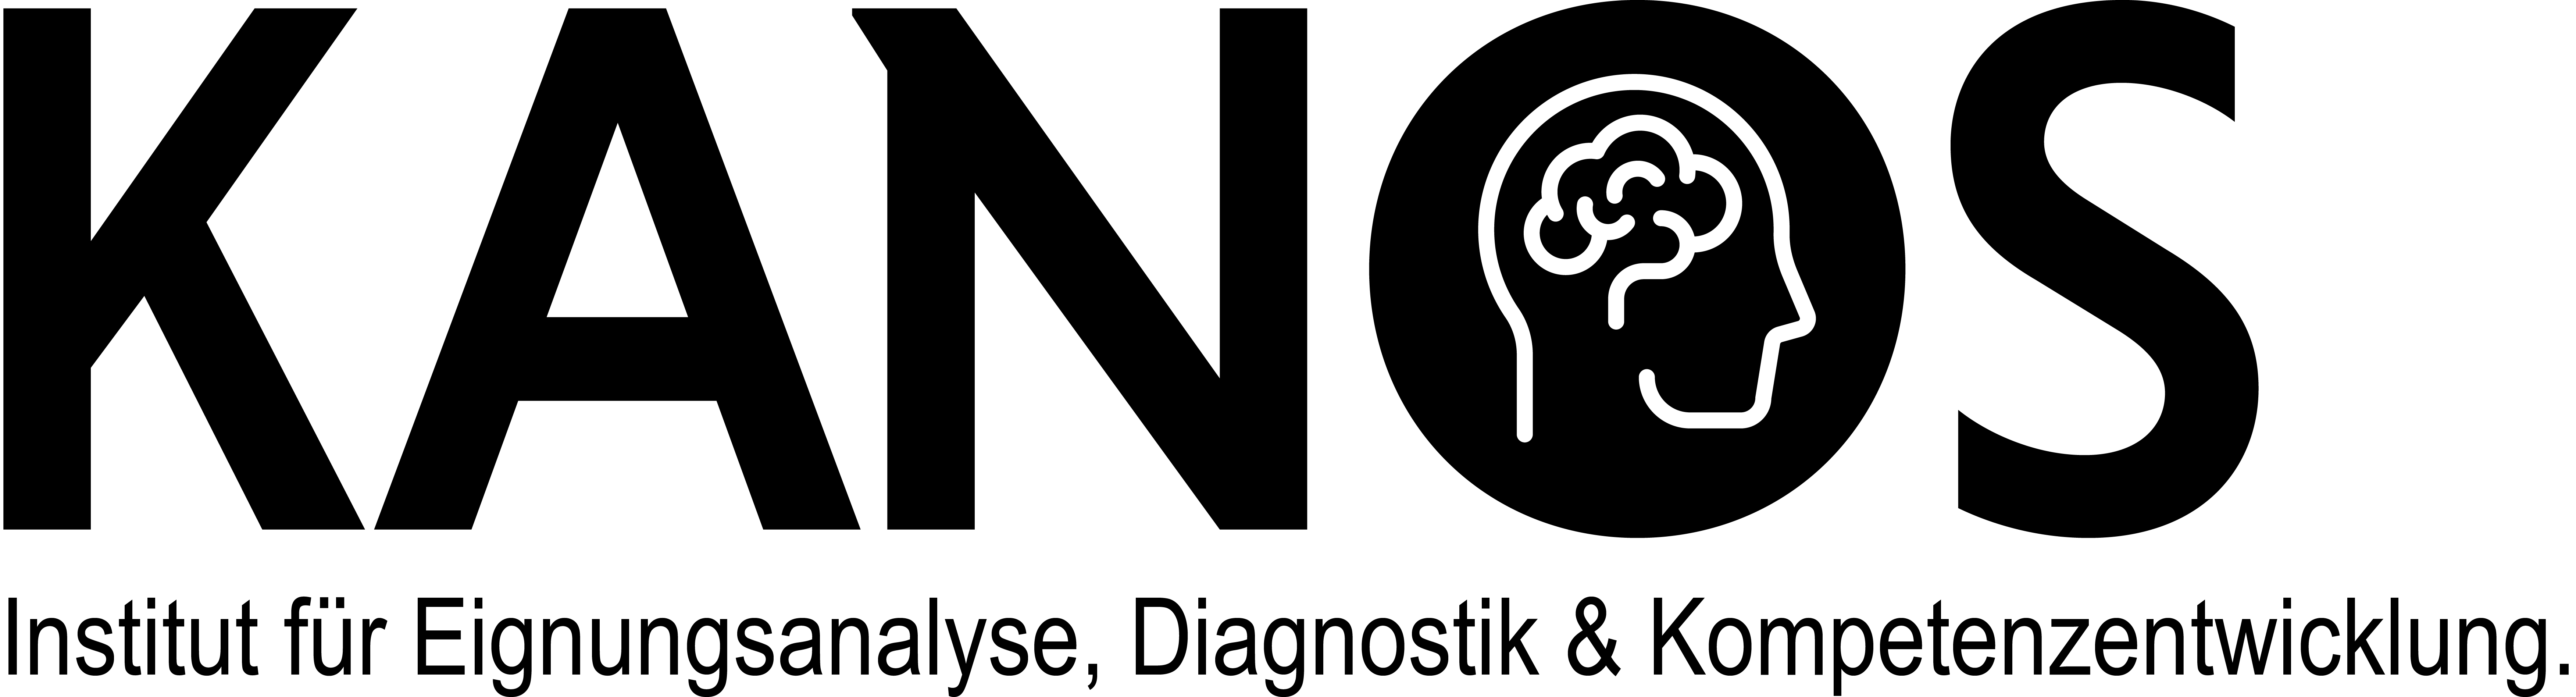 Kanos_Logo